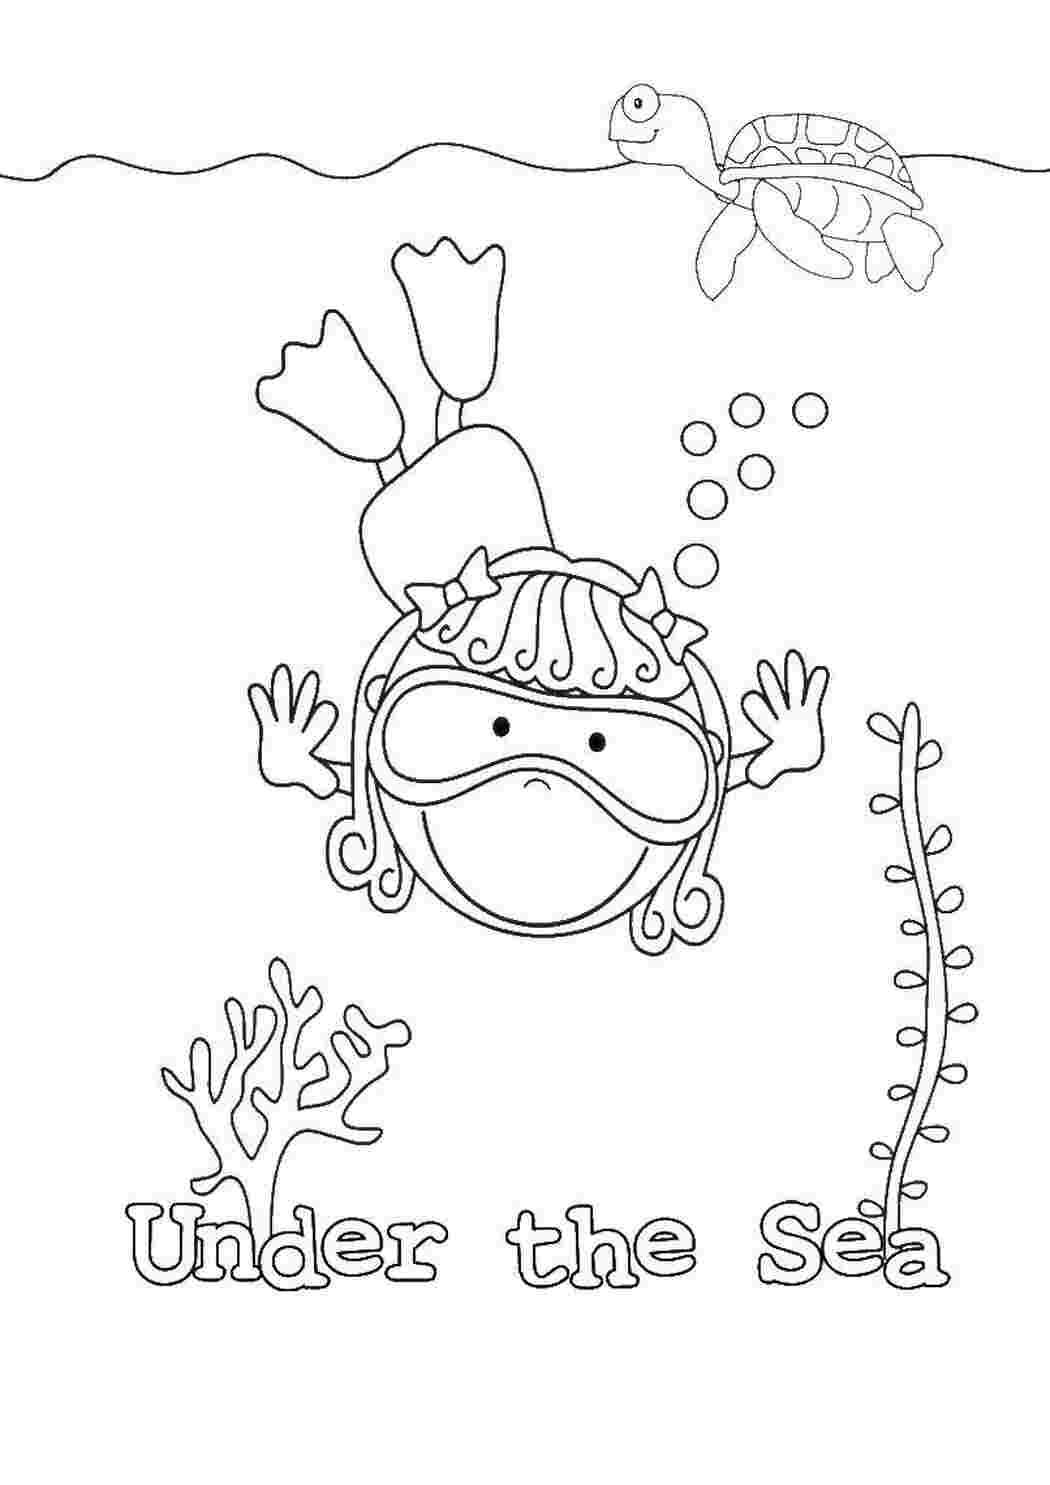 Раскраски водой распечатать. Аквалангист раскраска. Under the Sea раскраски. Водолаз раскраска для детей. Раскраска "подводный мир".